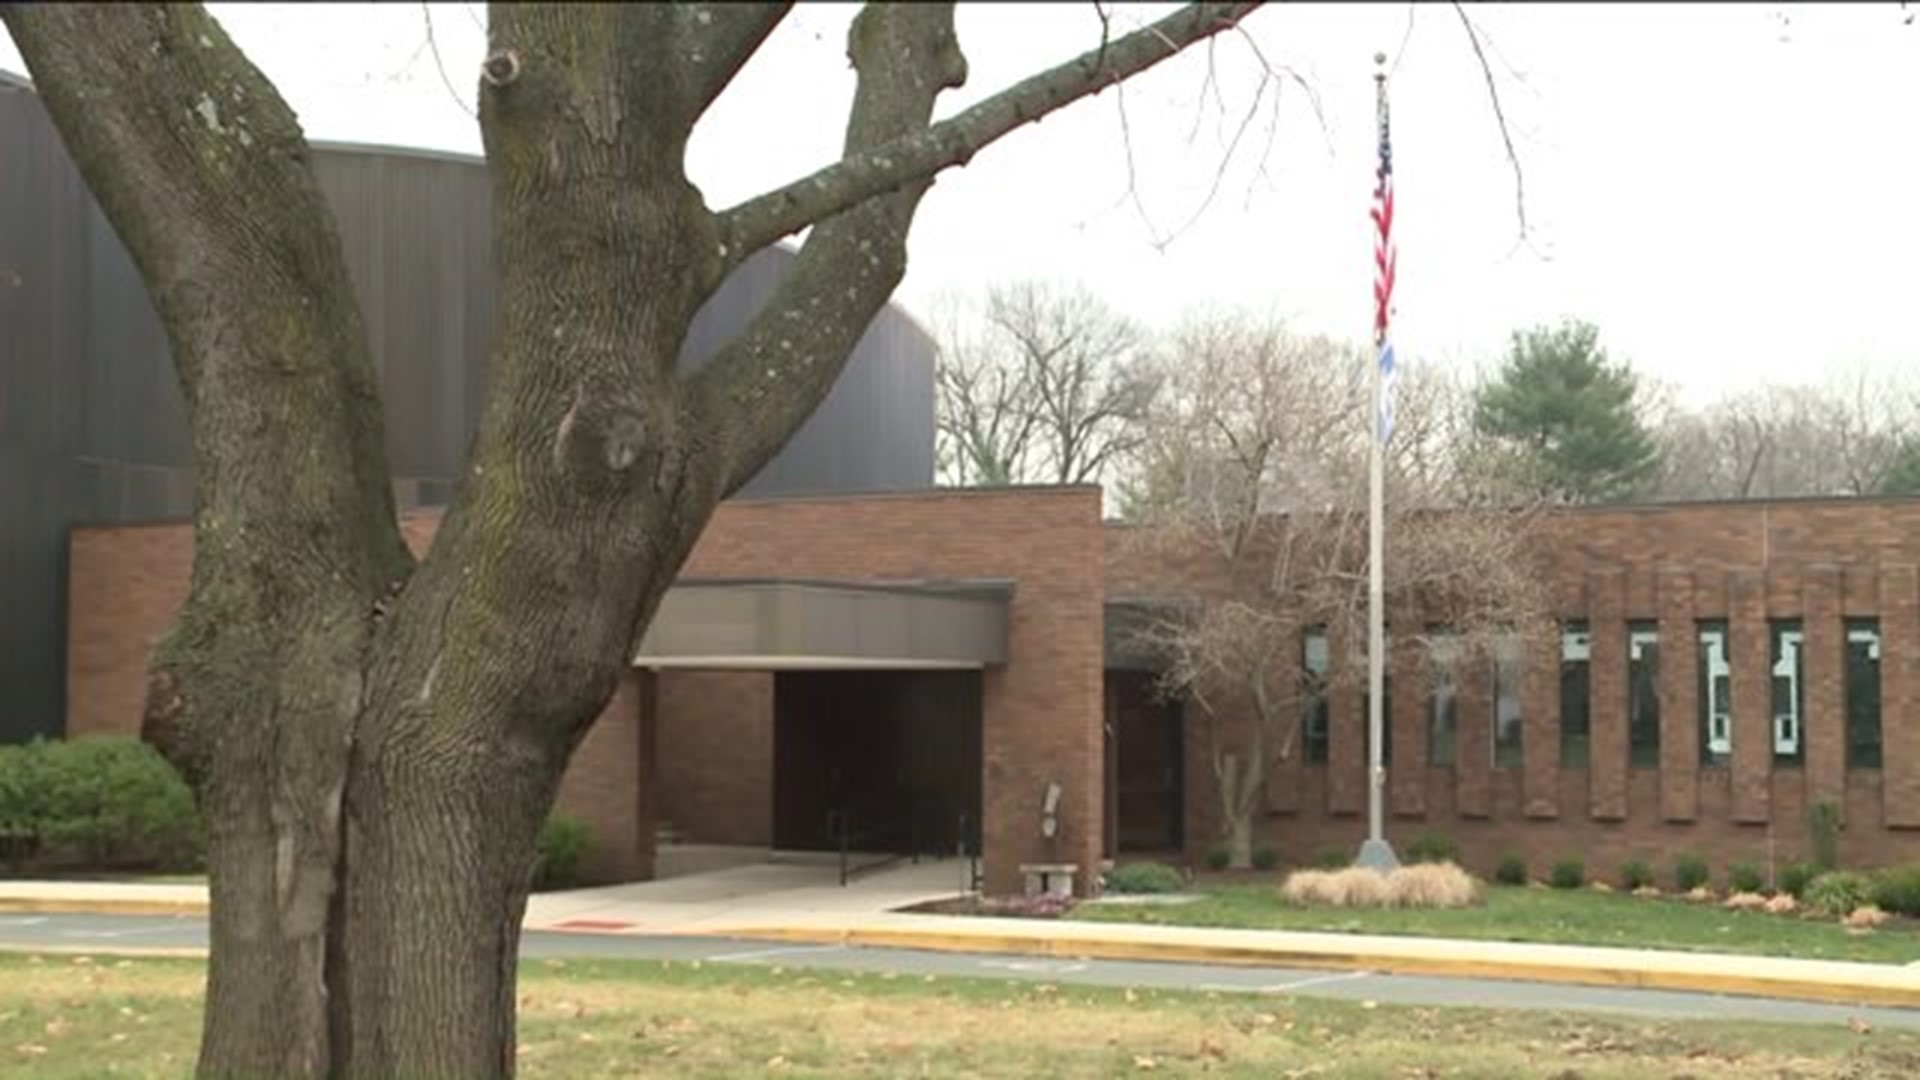 Members at West Hartford synagogue concerned for safety after strange incident